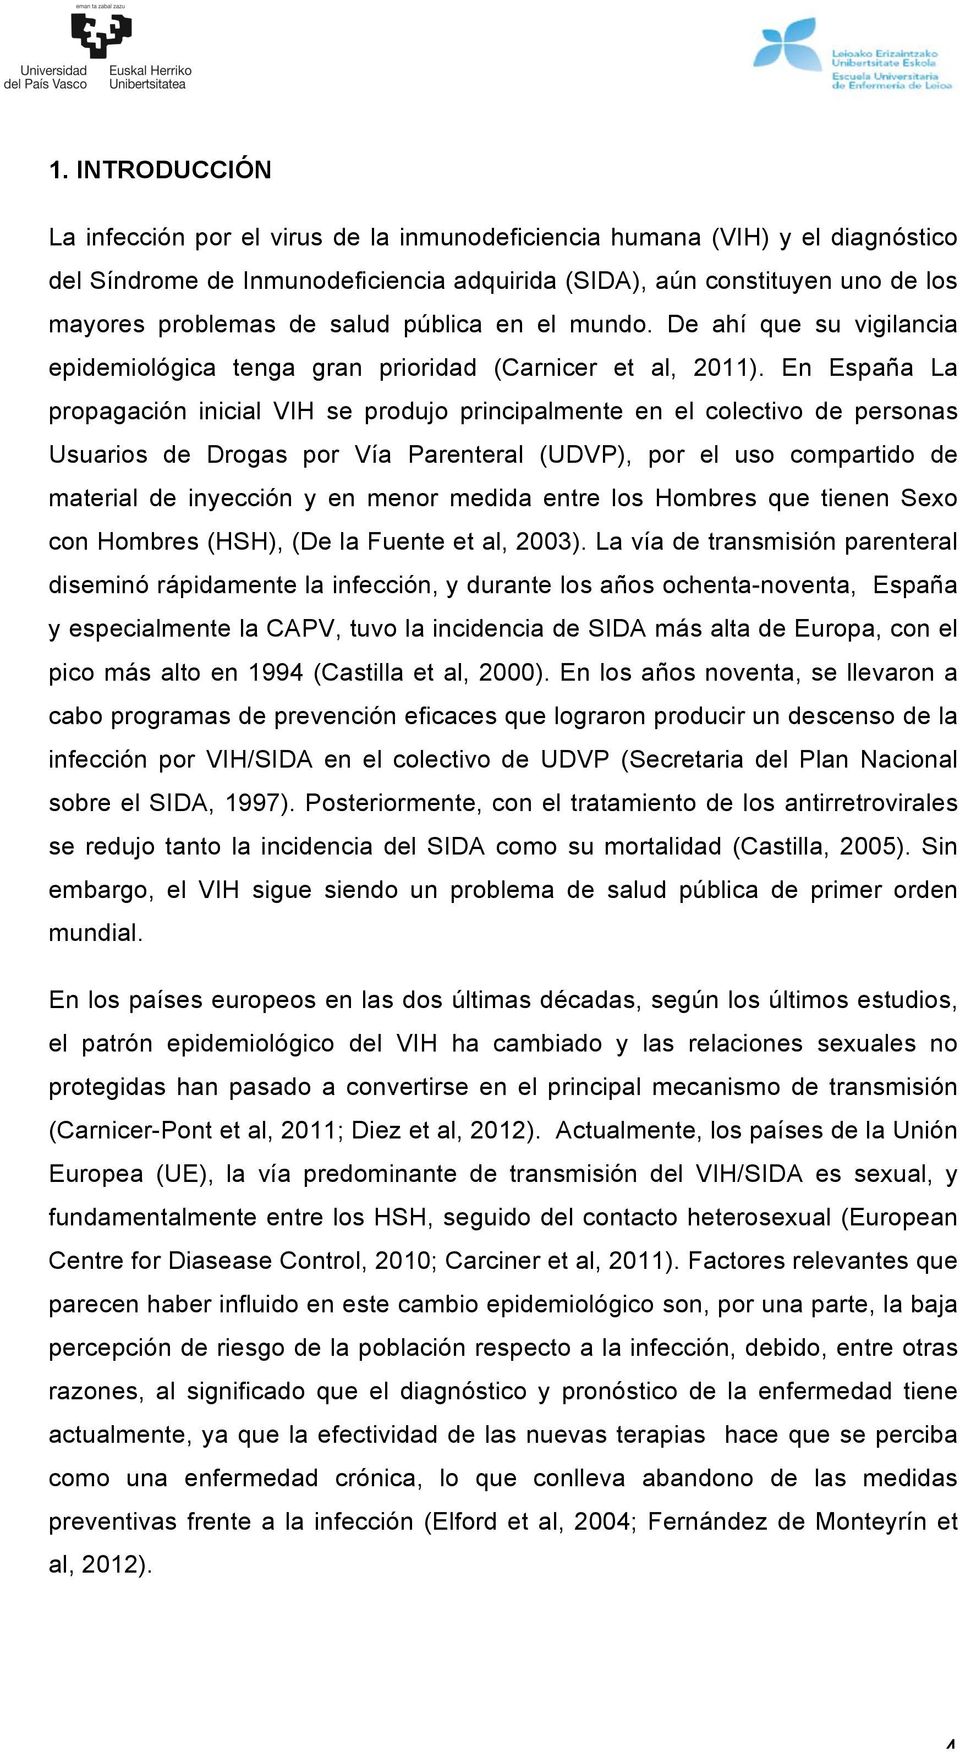 En España La propagación inicial VIH se produjo principalmente en el colectivo de personas Usuarios de Drogas por Vía Parenteral (UDVP), por el uso compartido de material de inyección y en menor